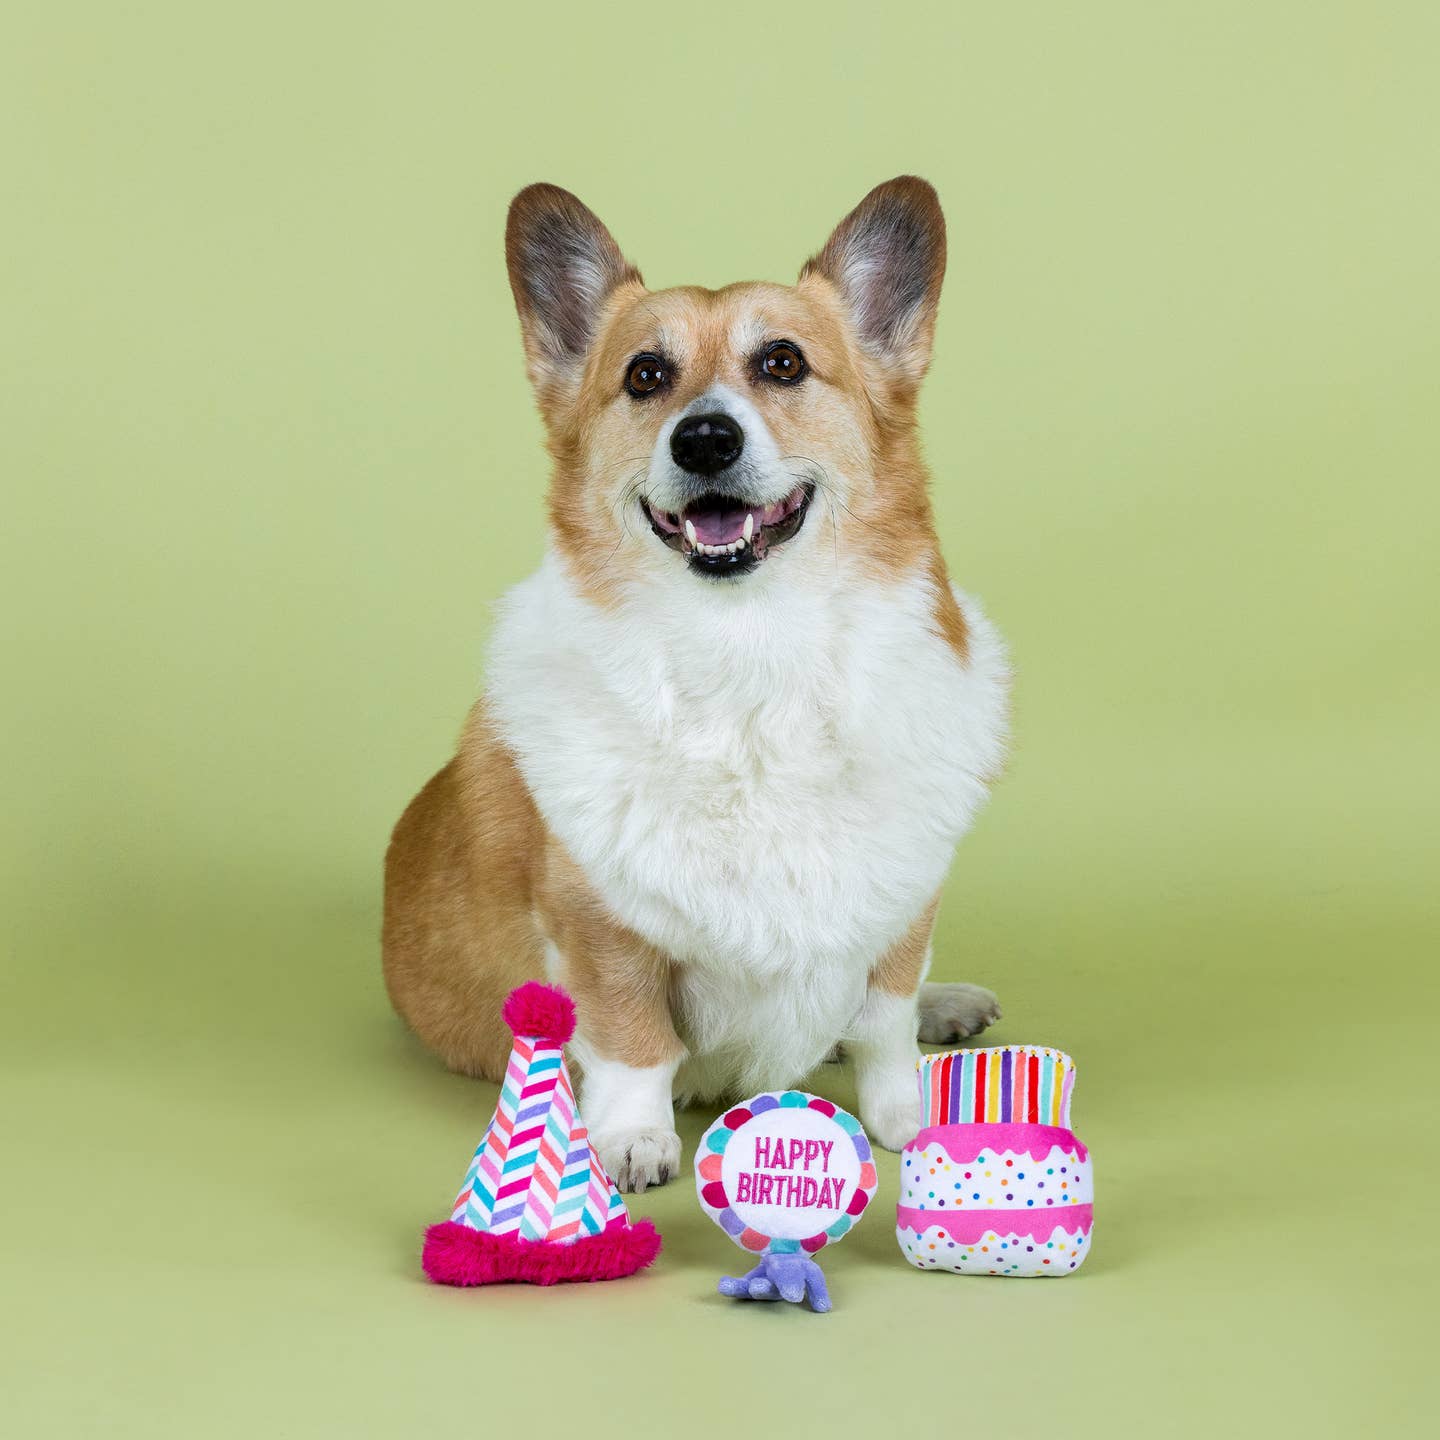 Happy Bark Day Dog Toy Set